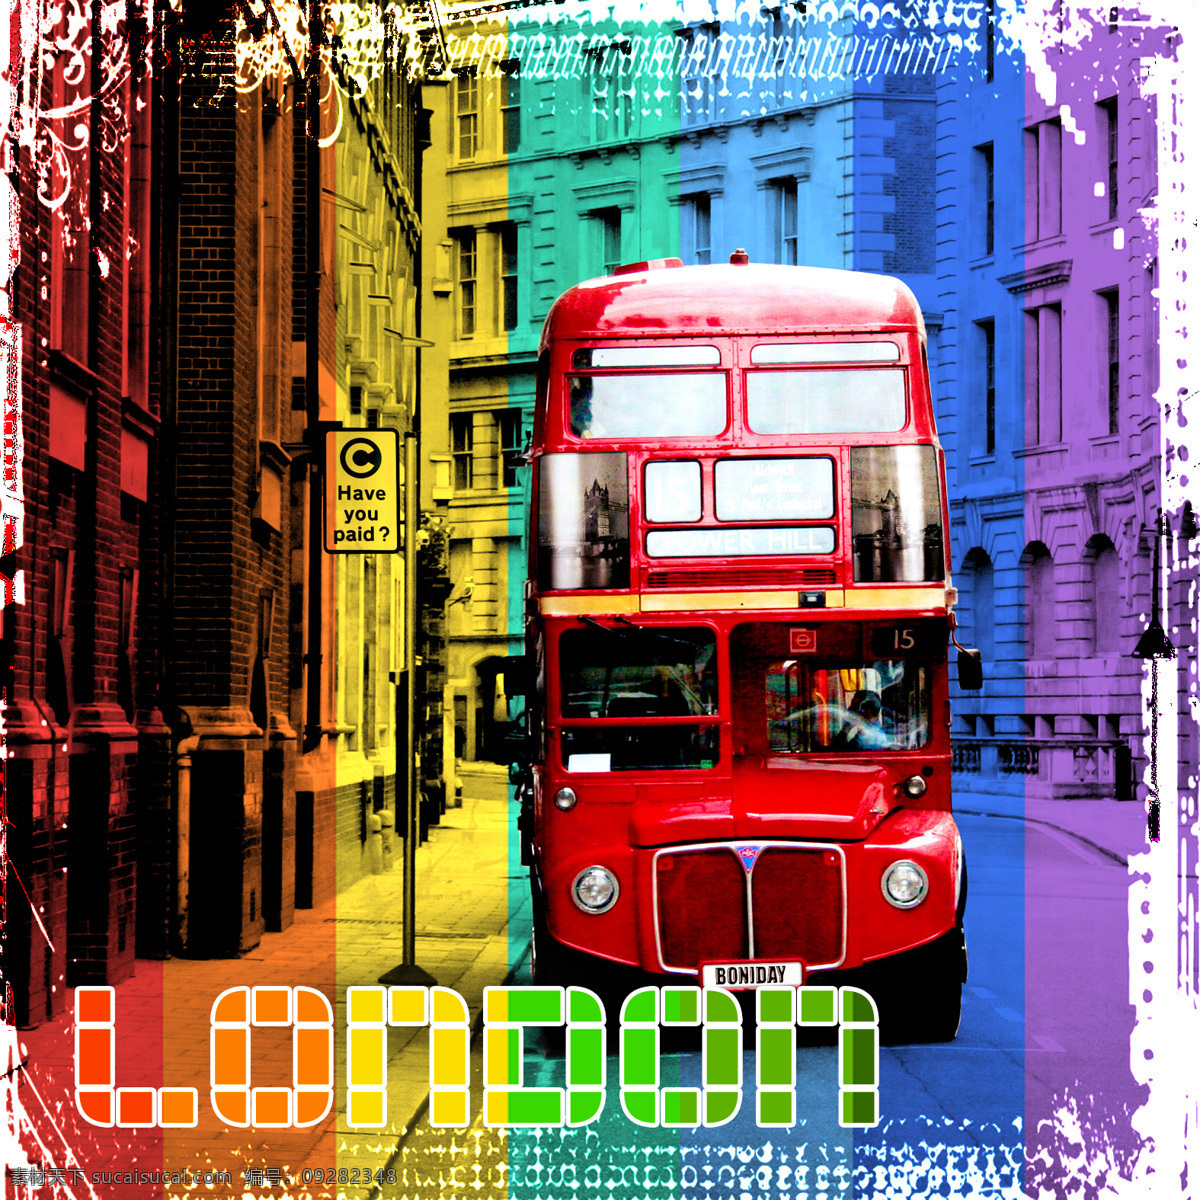 伦敦双层巴士 london 伦敦 多彩伦敦 英国伦敦 工艺图片 交通工具 现代科技